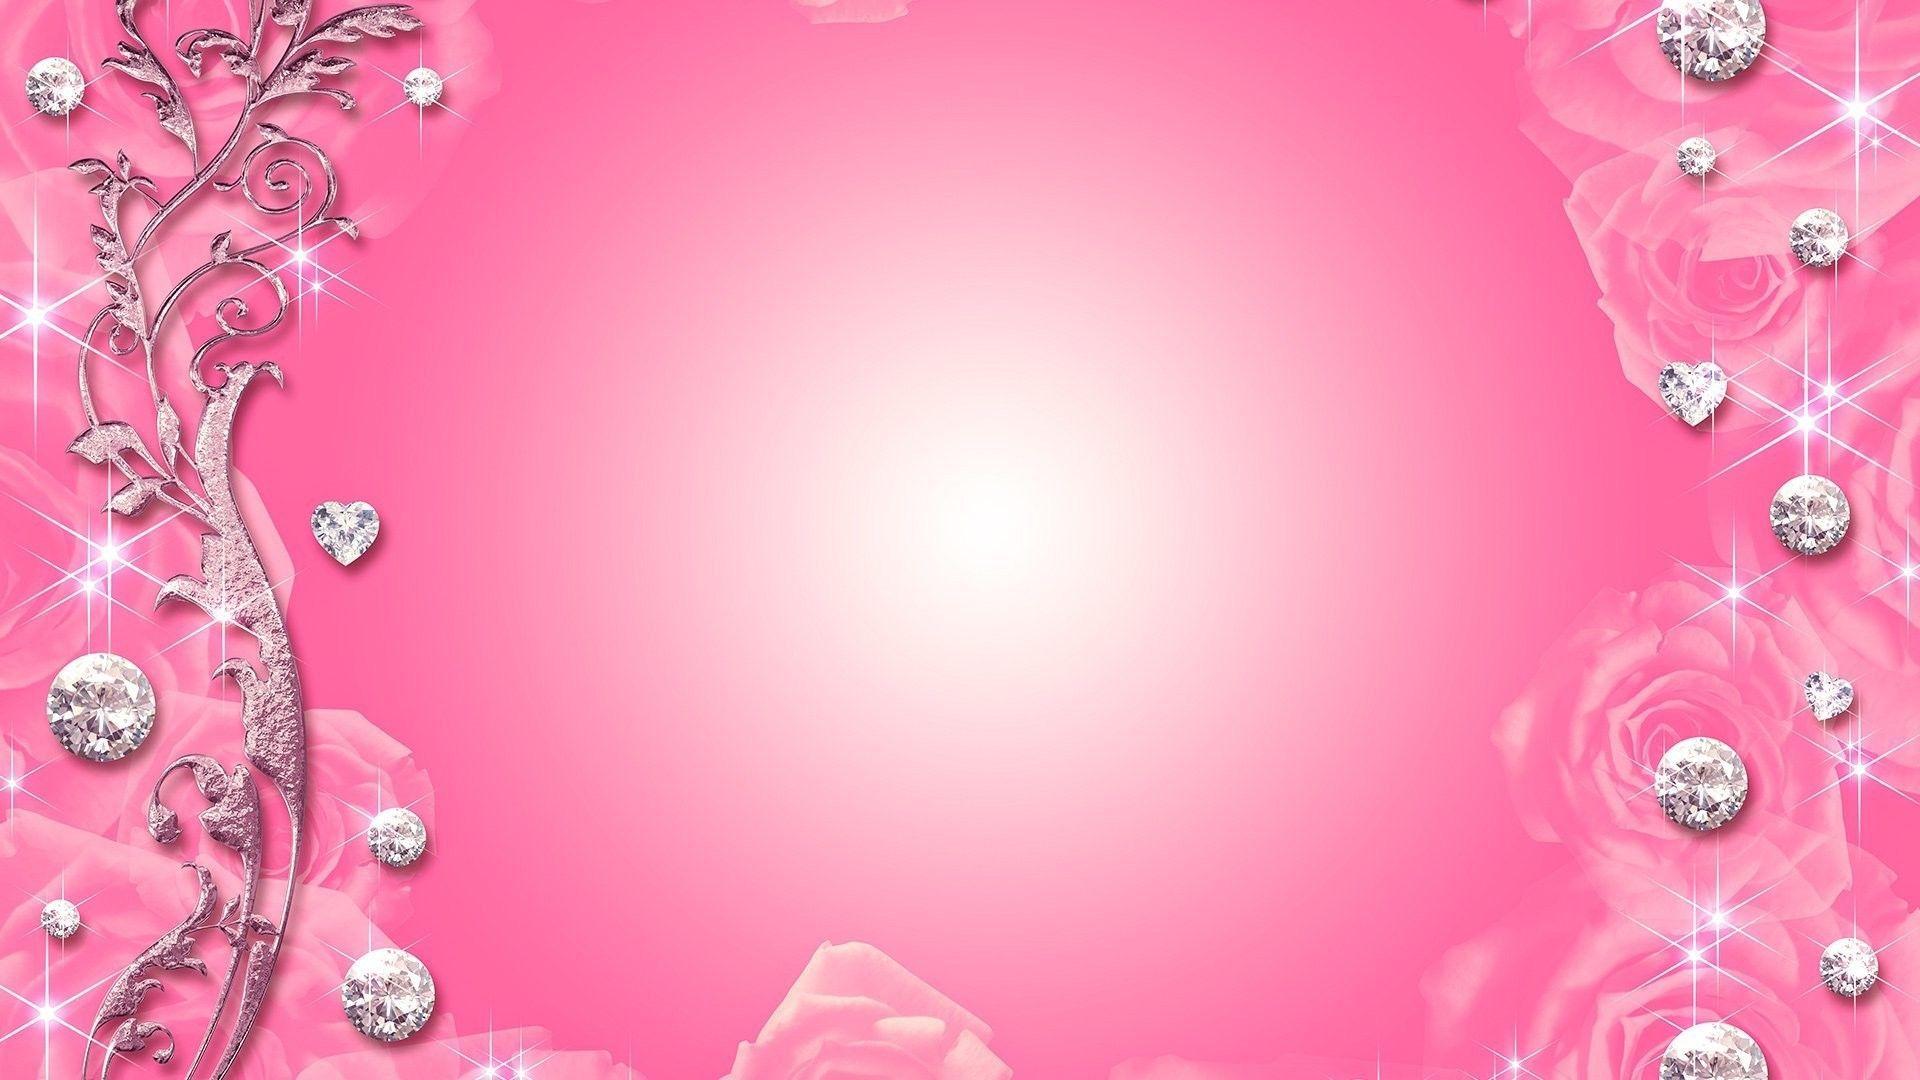 Diamond Heart N flowers Pink Background. HD Wallpaper. Desktop